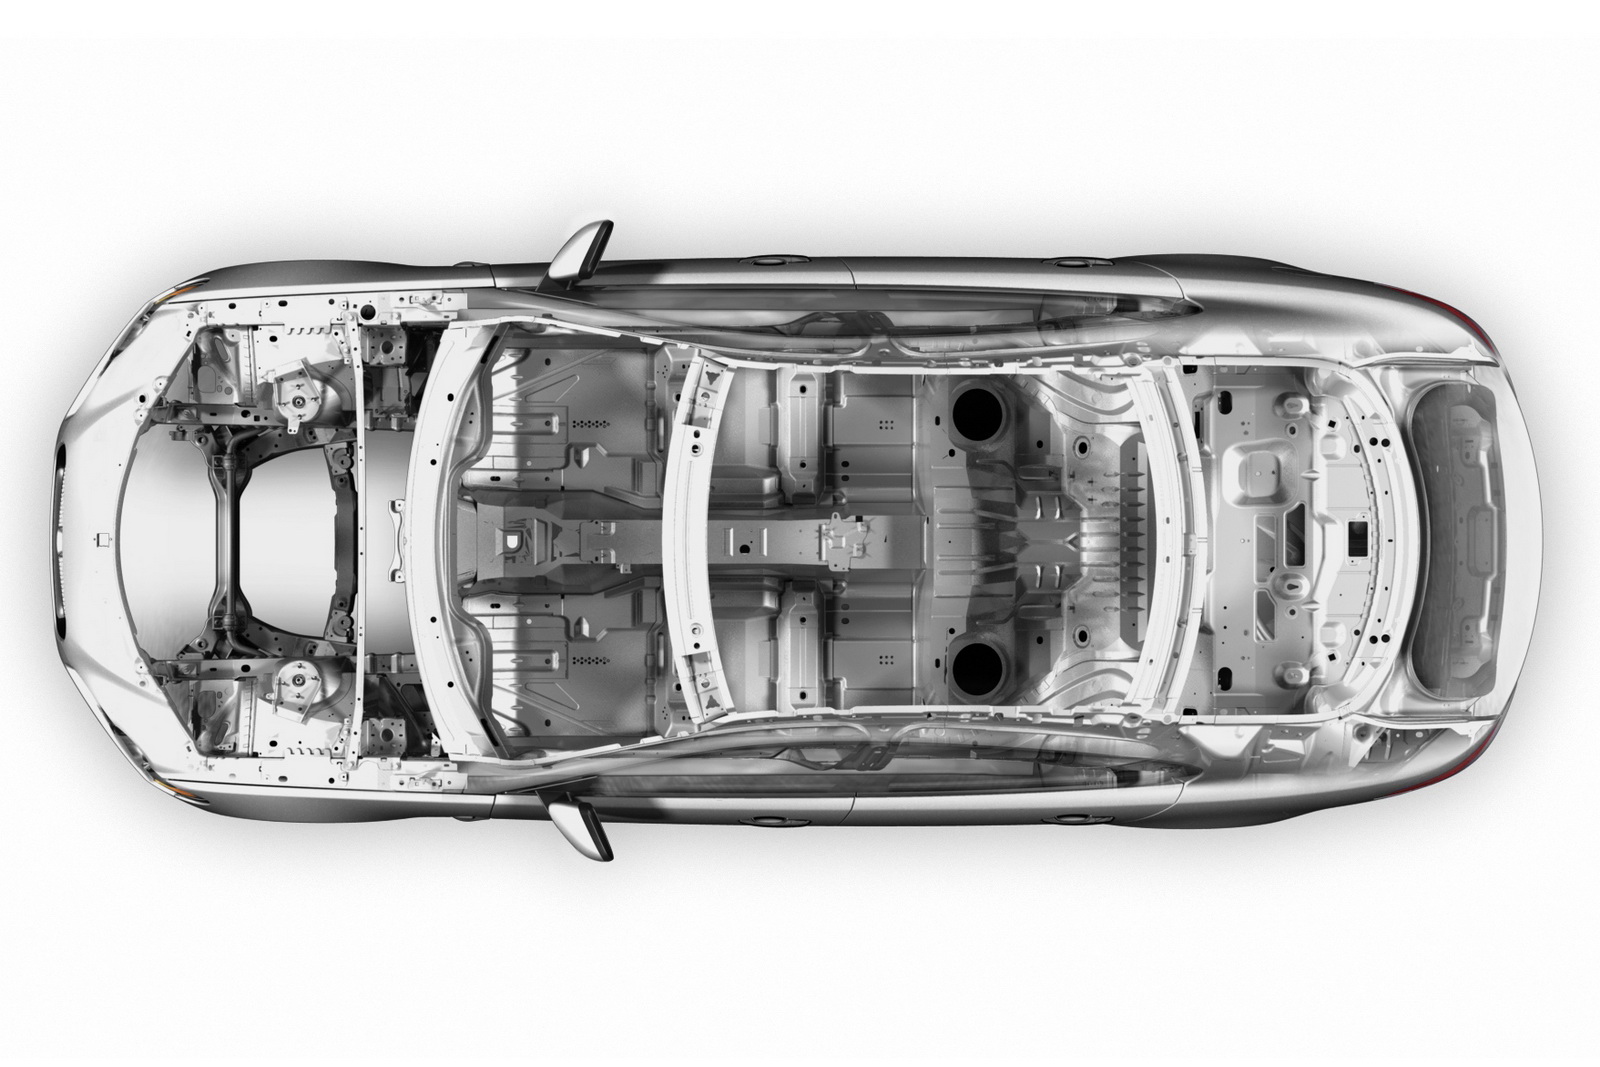 Jaguar XF aluminum monocoque